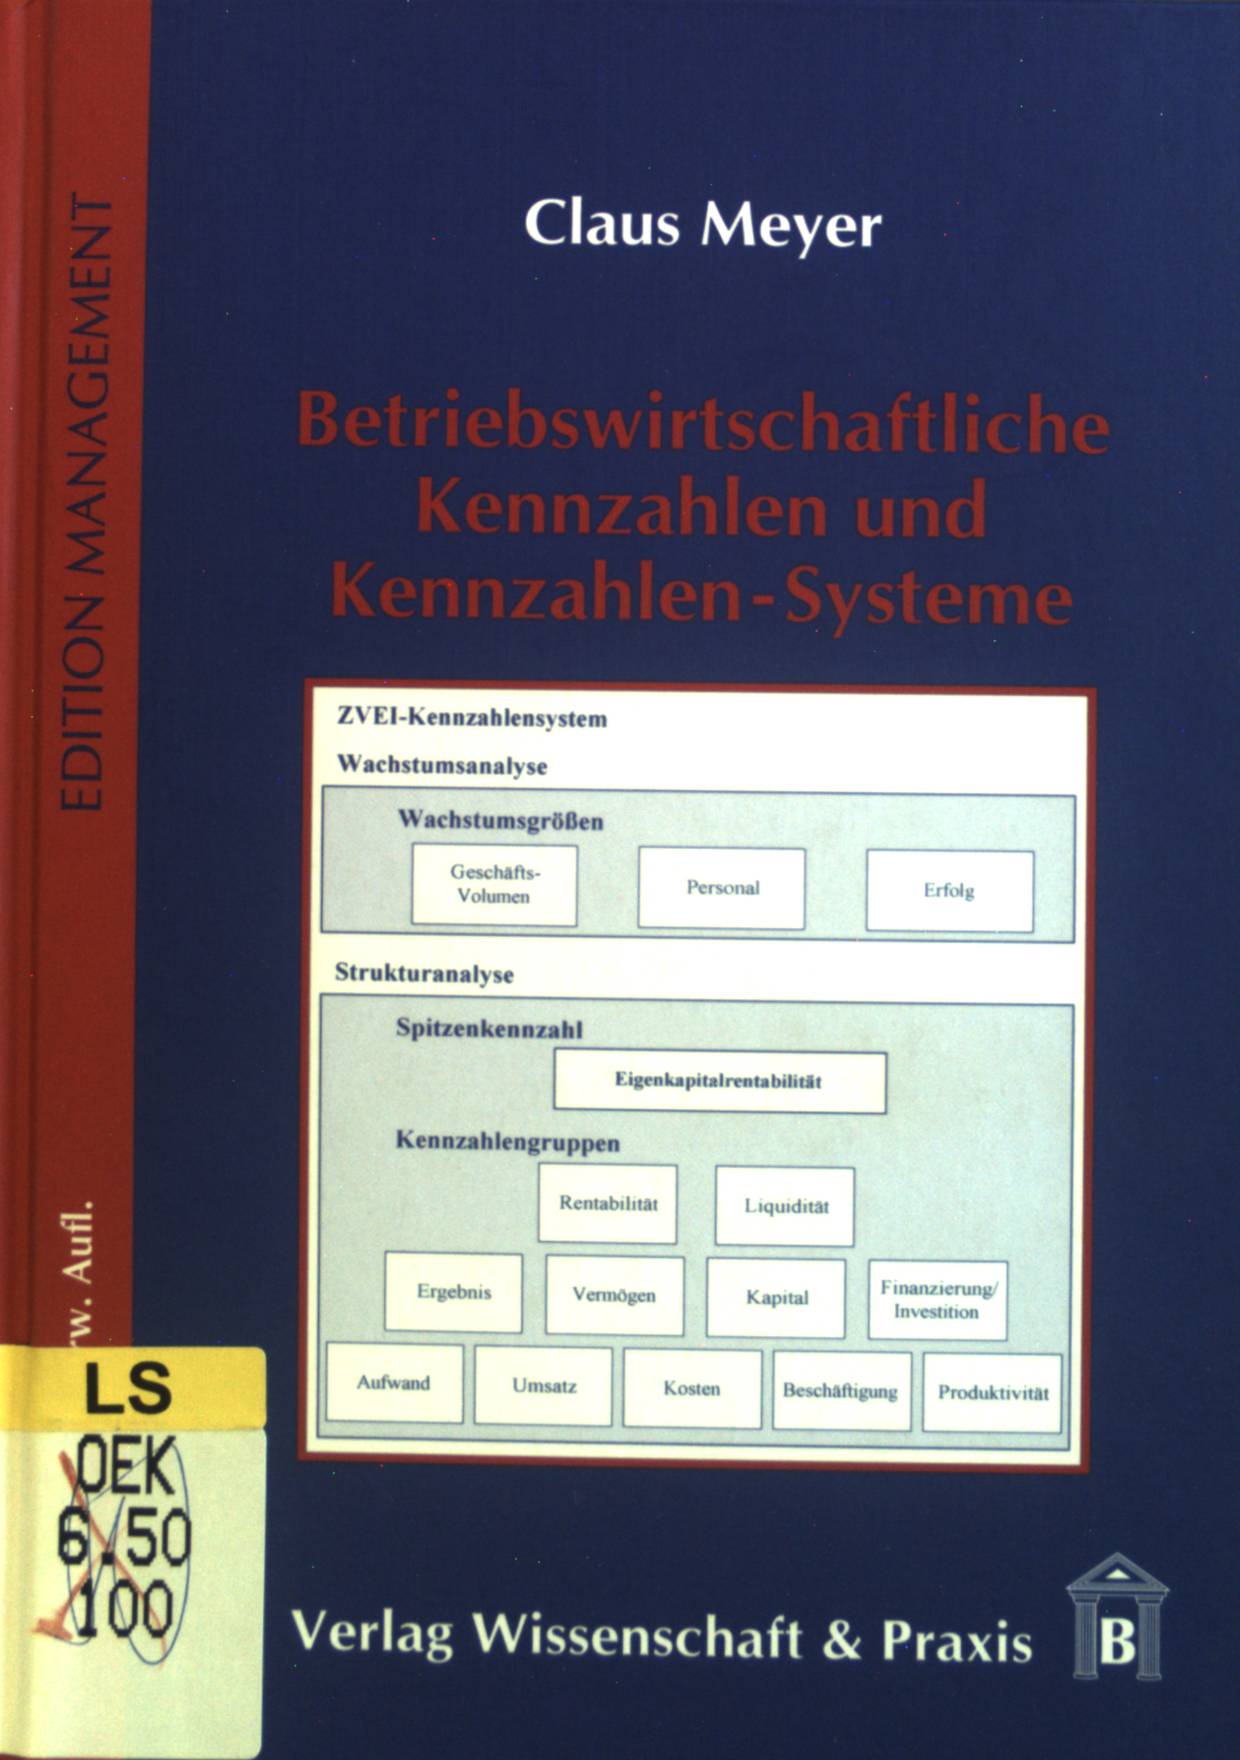 Betriebswirtschaftliche Kennzahlen und Kennzahlen-Systeme. Edition Management 6., überarb. und erw. Aufl. - Meyer, Claus